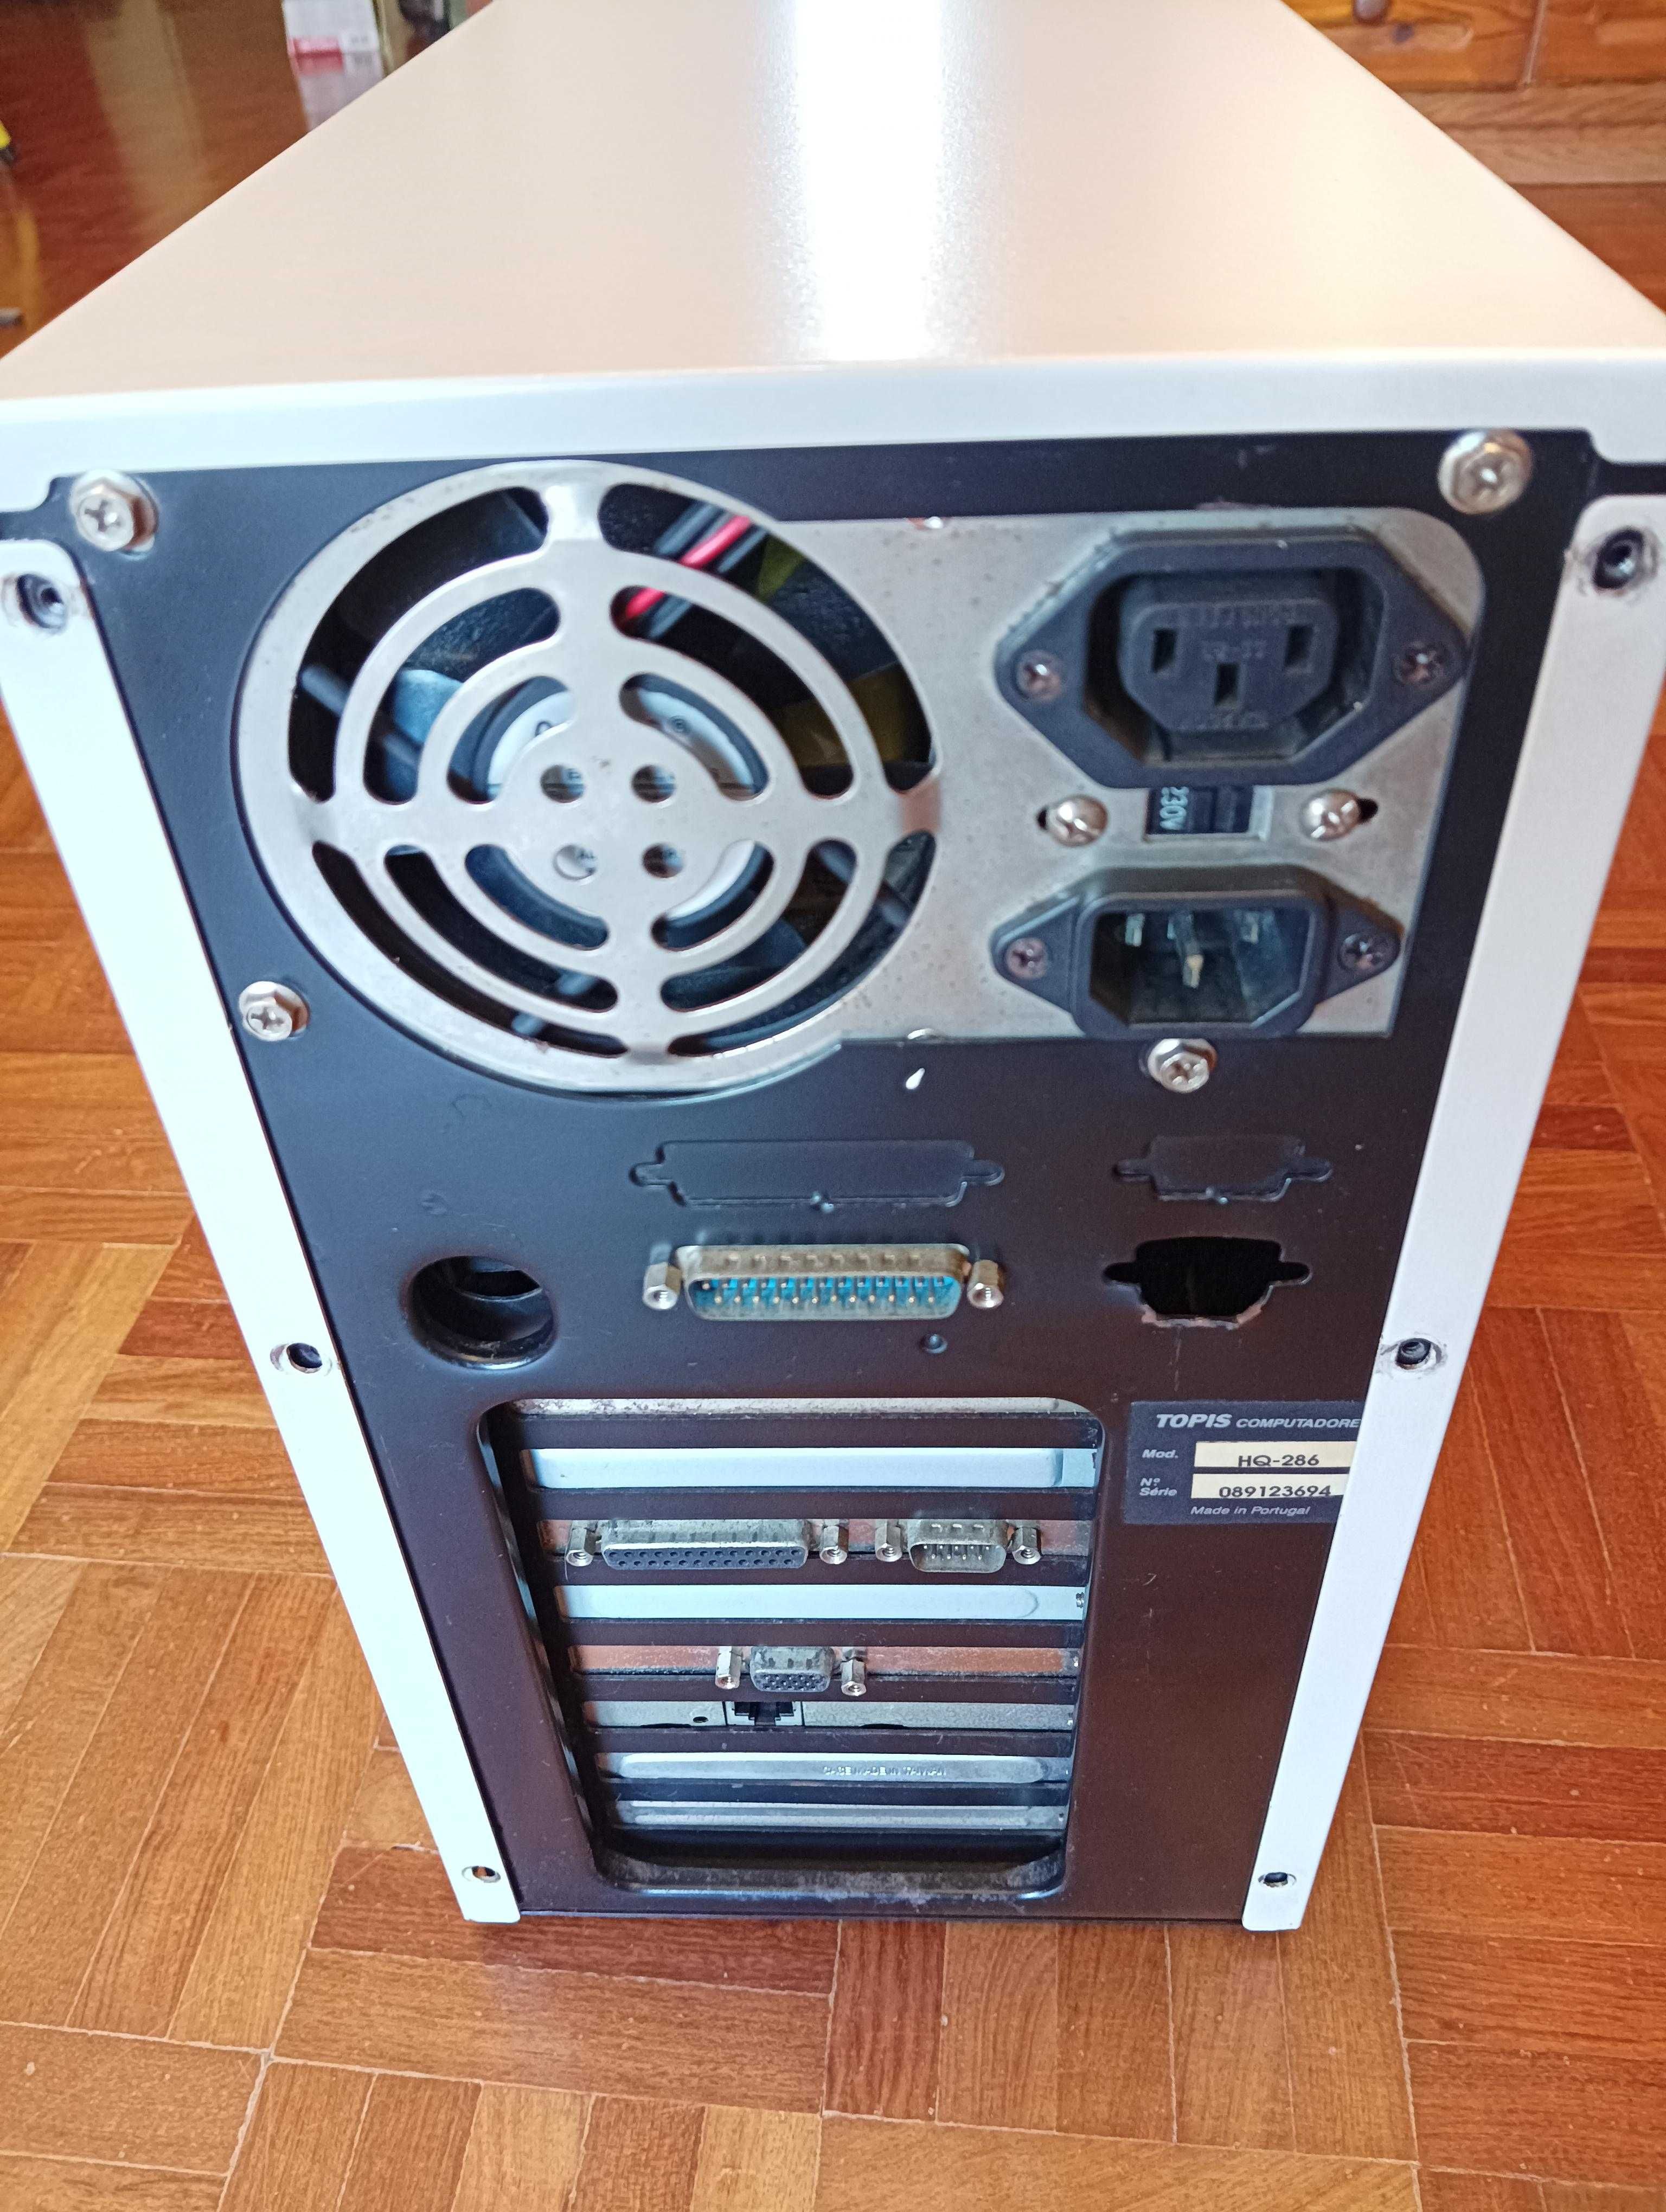 Computador Antigo de Colecção, 80 286, 12 MHz, Monitor, Teclado e Rato